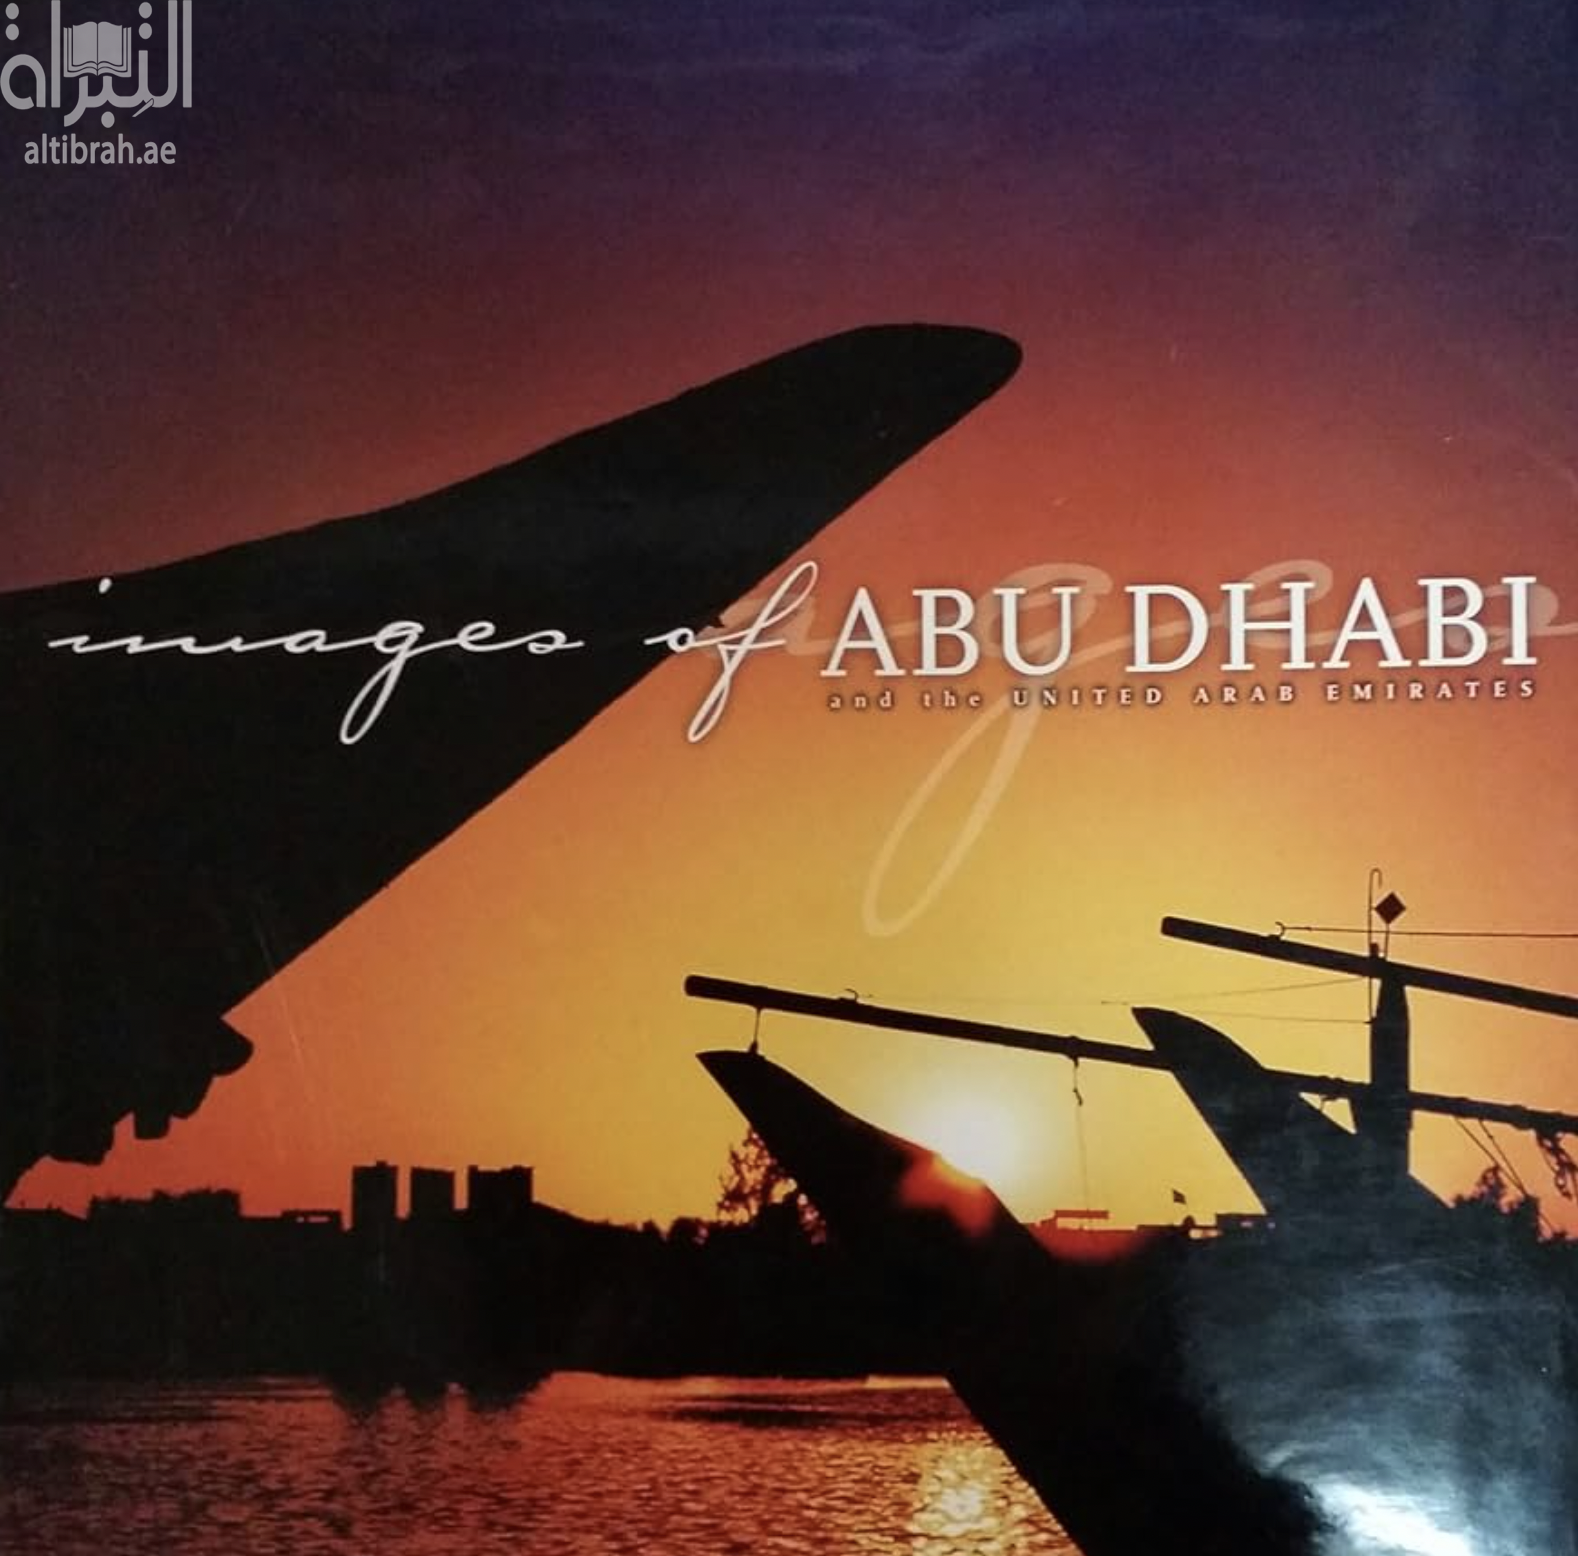 Images of Abu Dhabi and the United Arab Emirates